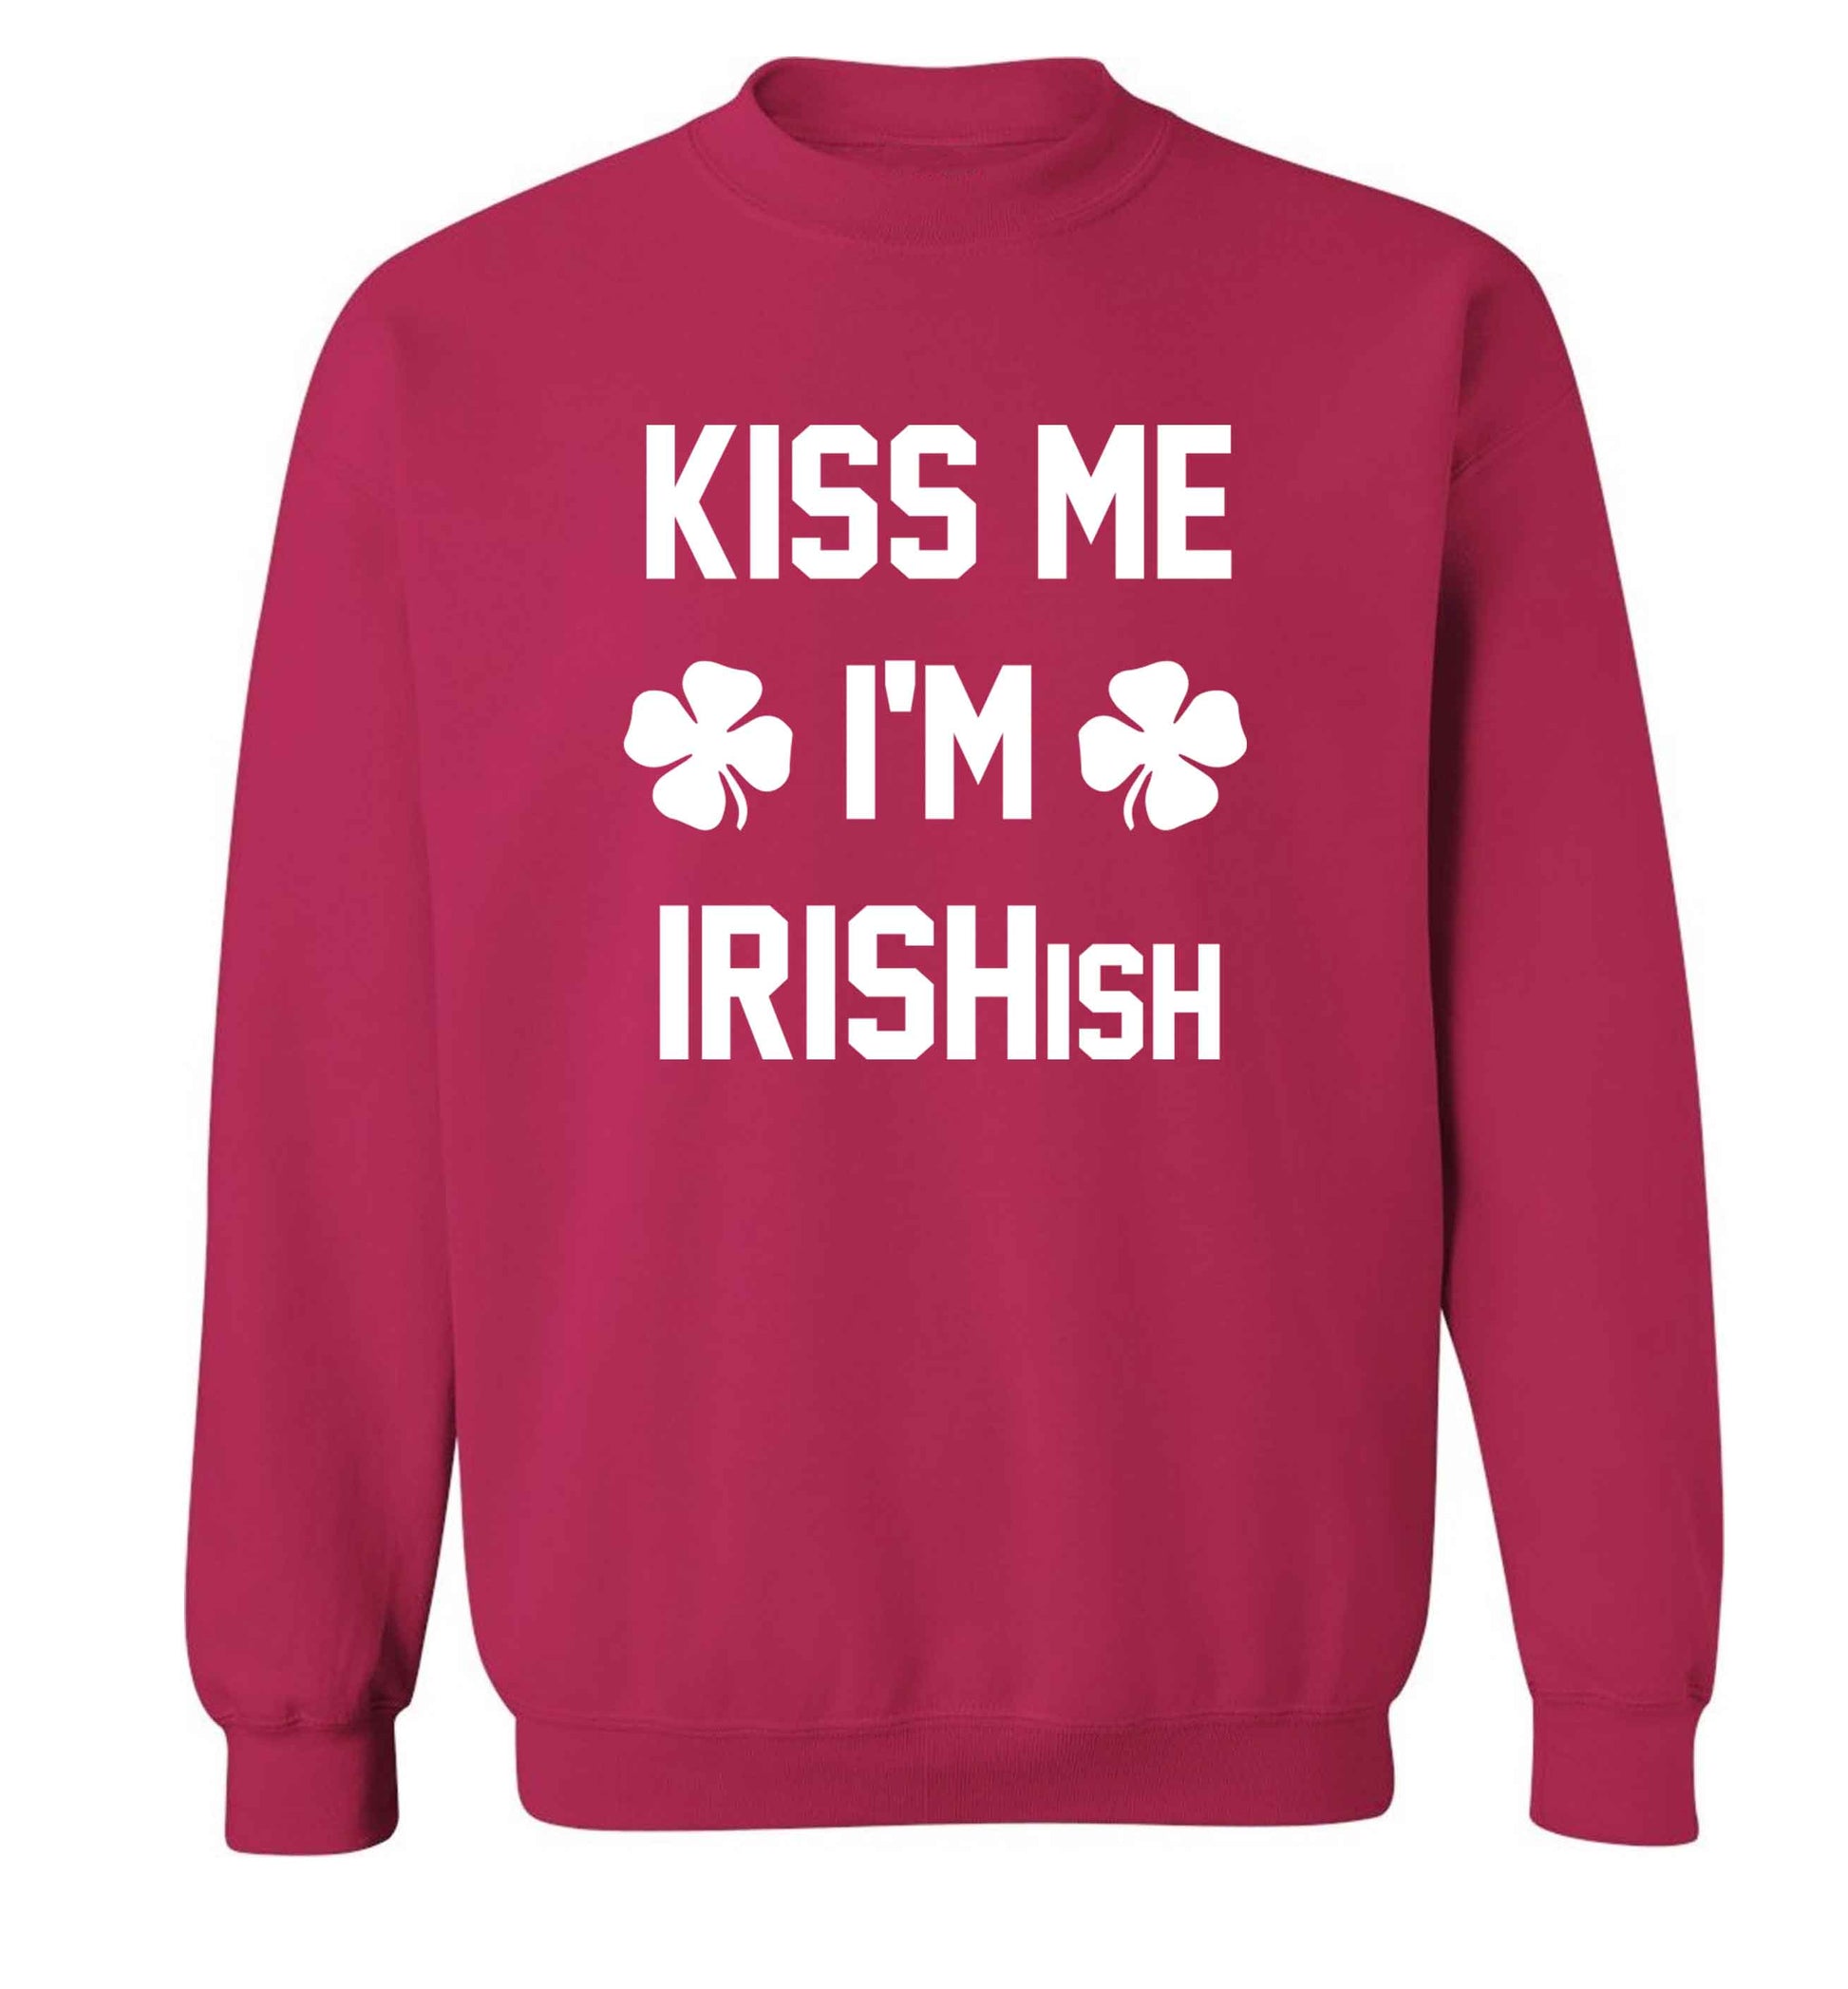 Kiss me I'm Irishish adult's unisex pink sweater 2XL